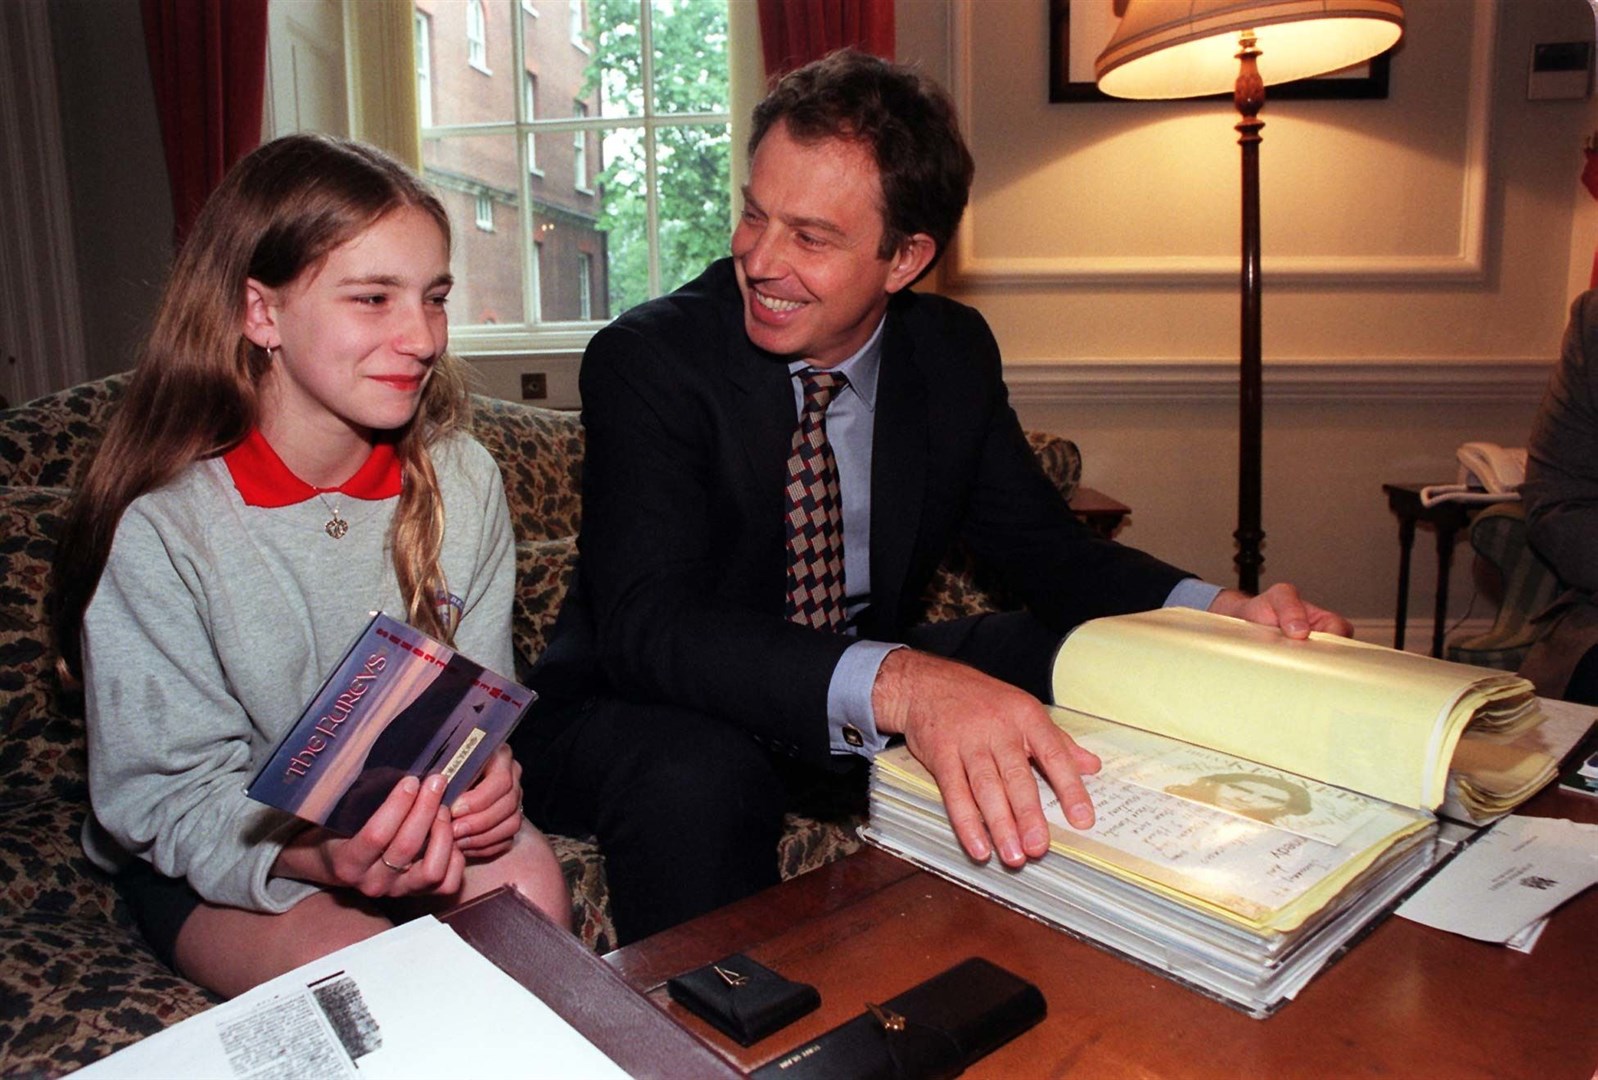 Belfast schoolgirl Margaret Gibney with Prime Minister Tony Blair inside 10 Downing Street in 1997 (Peter Jordan/PA)